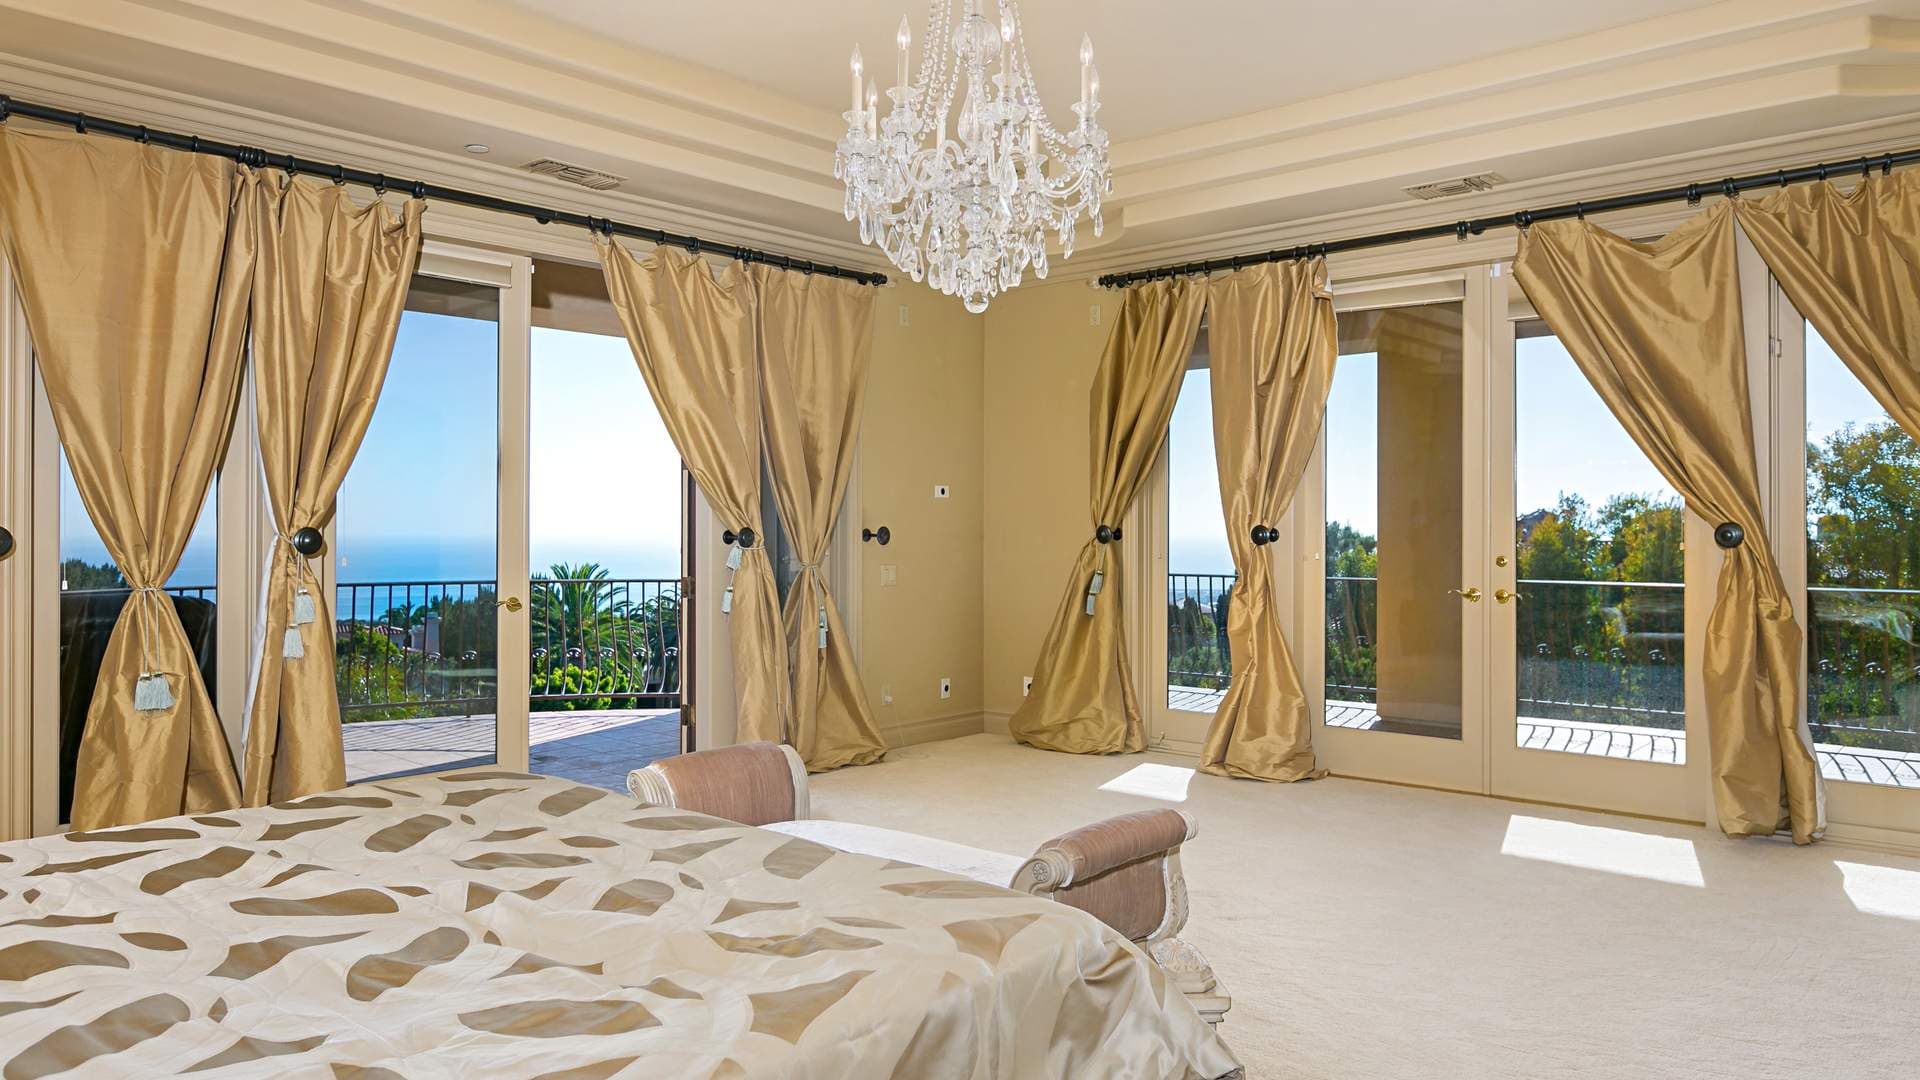 5 Bedroom Villa For Sale Newport Beach Lp01276 8d68e555ffb060.jpg